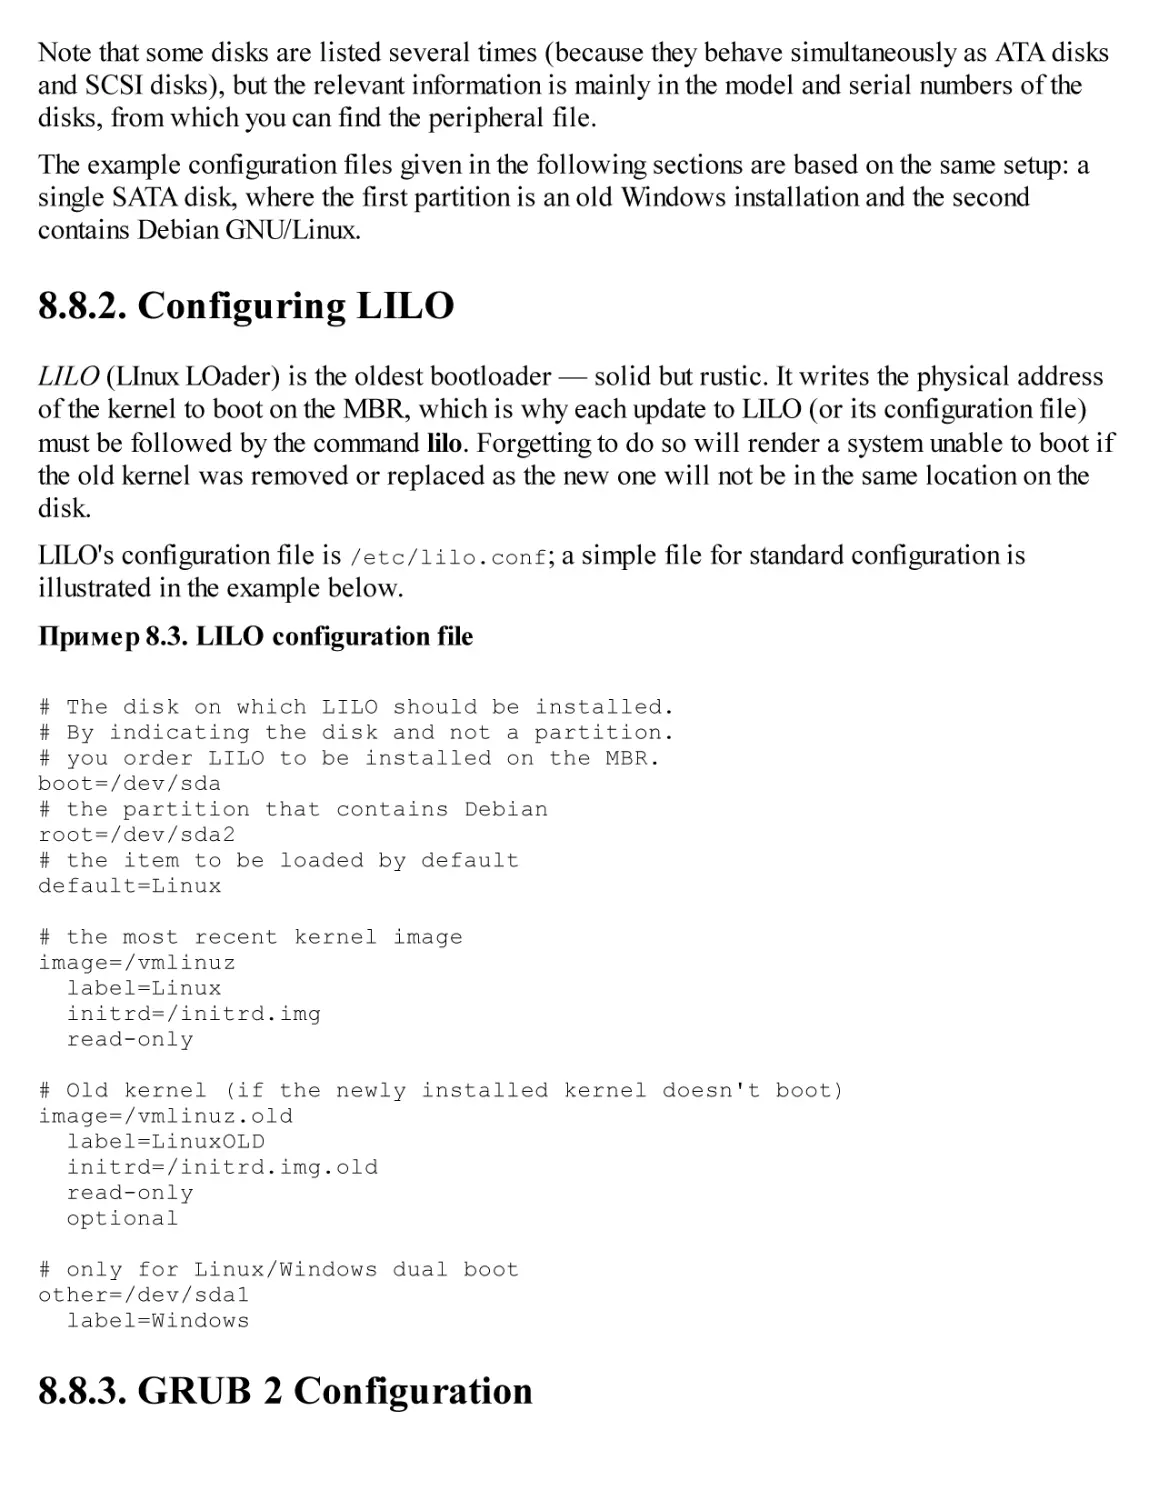 8.8.2. Configuring LILO
8.8.3. GRUB 2 Configuration